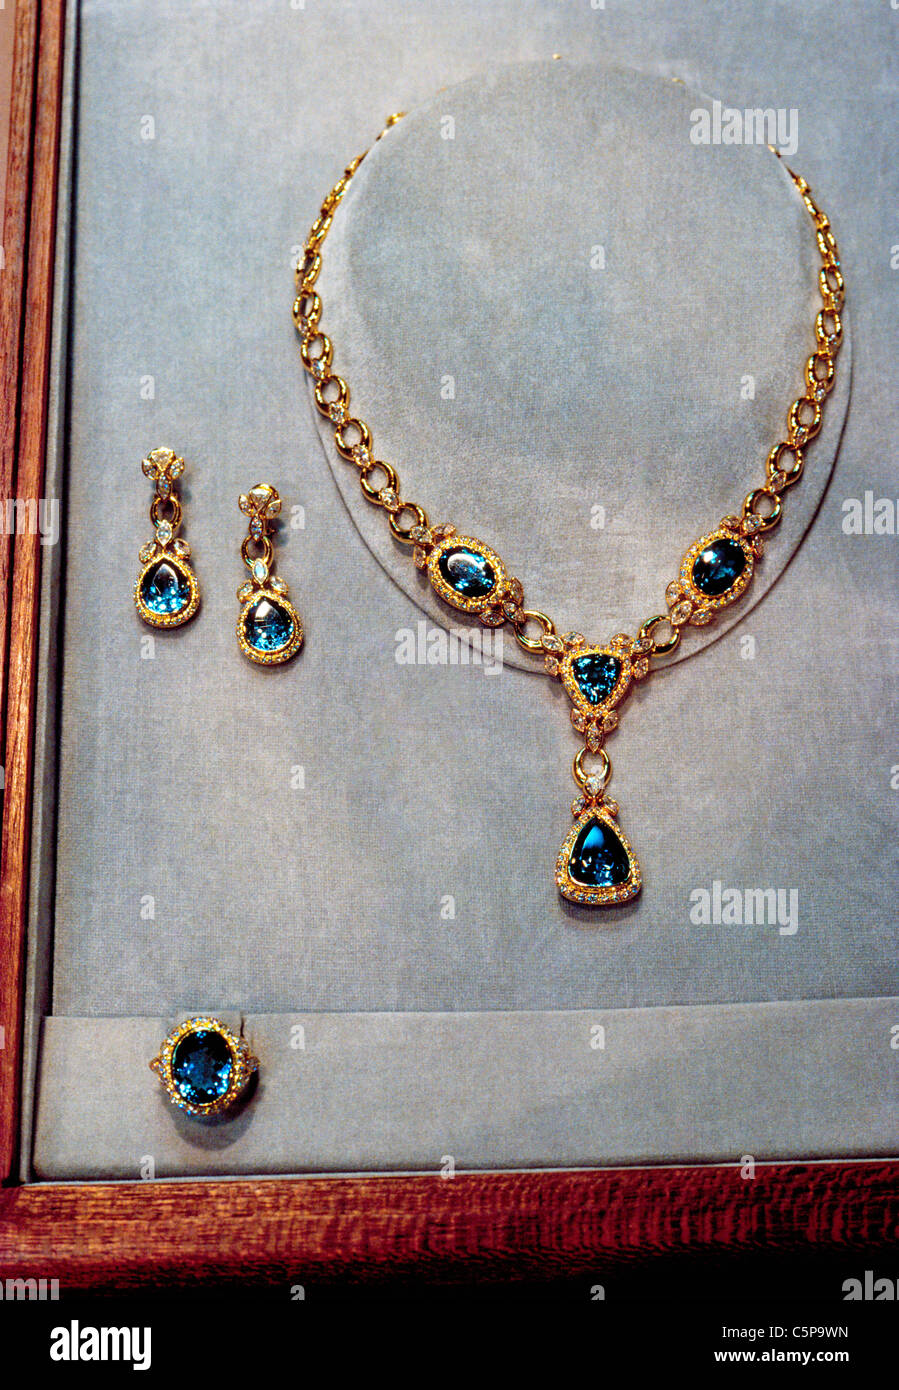 Maßgeschneiderte Edelstein Halsketten, Ohrringe und Ringe sind  Markenzeichen von H. Stern, ein Schmuck-reich mit Sitz in Rio De Janeiro,  Brasilien, Südamerika Stockfotografie - Alamy